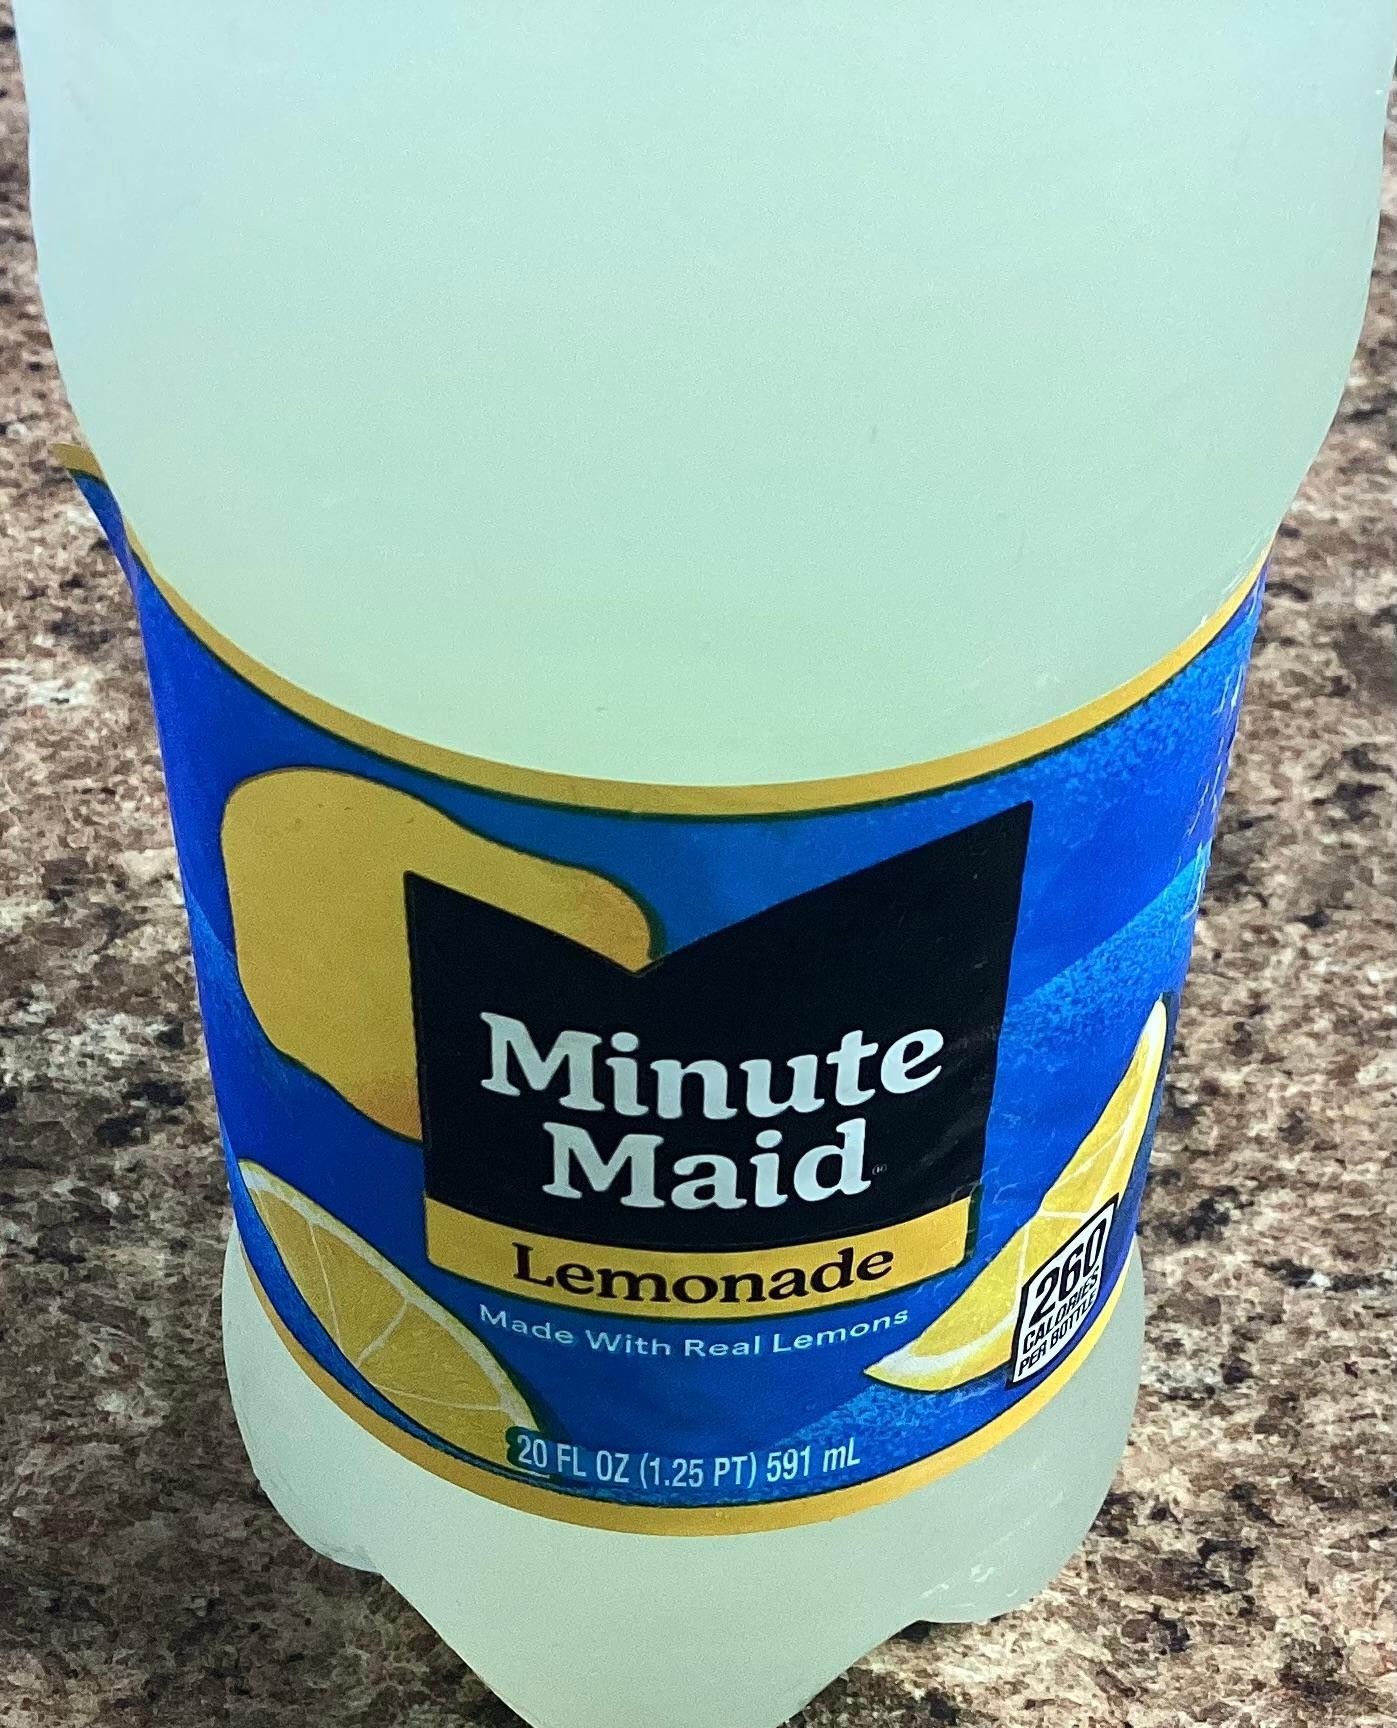 Minute Maid lemonade